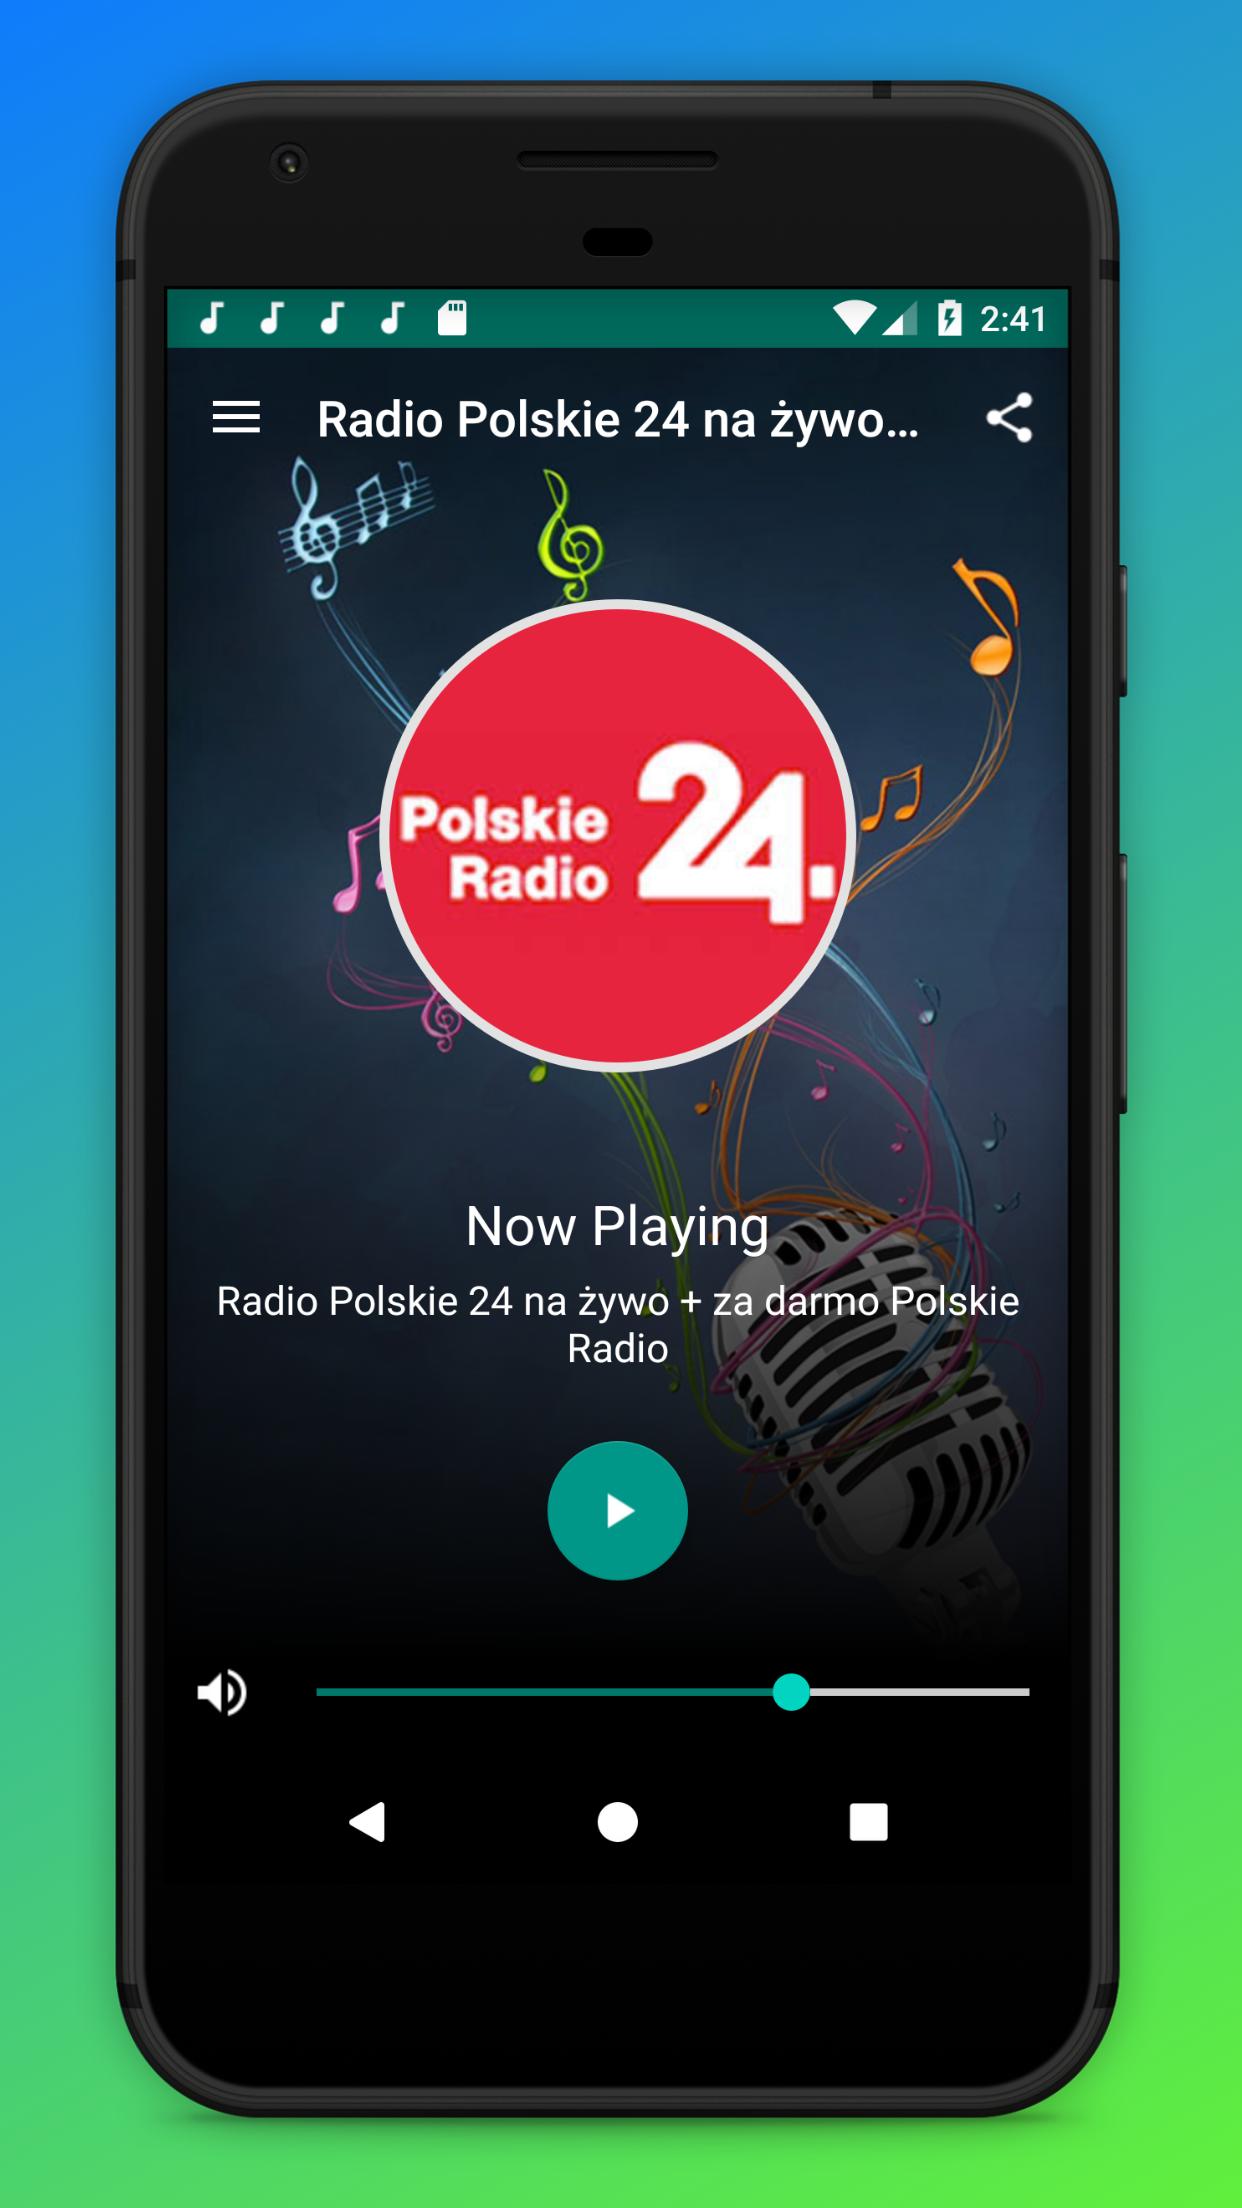 Radio Polskie 24 na żywo + za darmo Polskie Radio for Android - APK Download